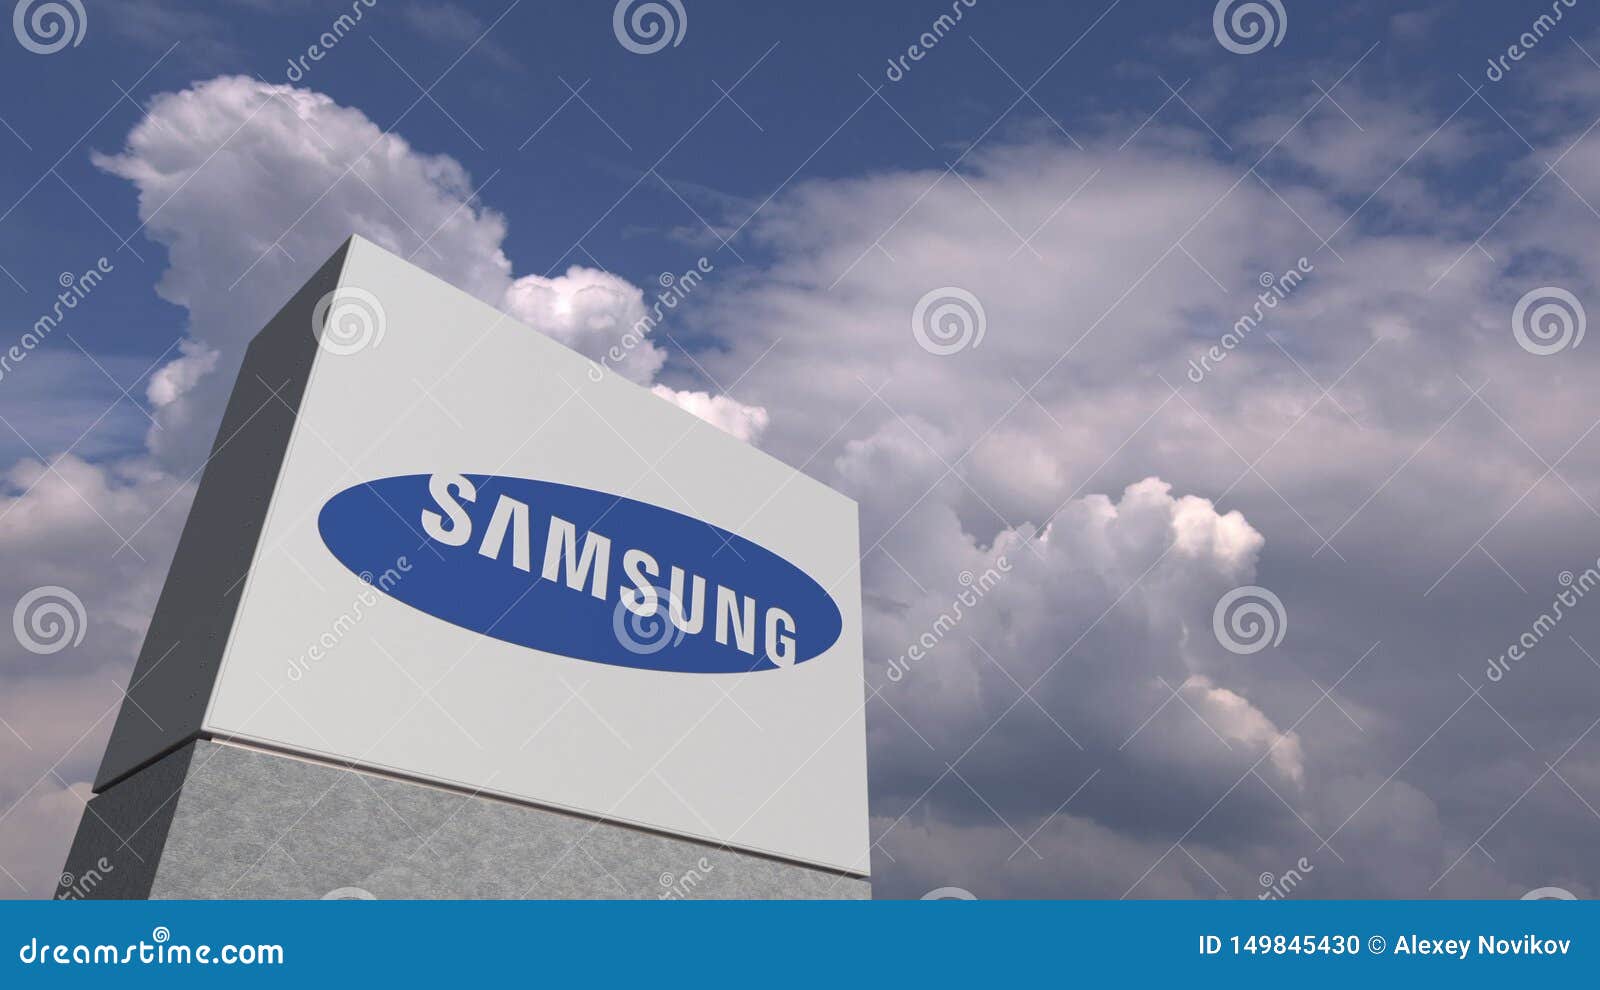 Cùng chiêm ngưỡng hình ảnh với biểu tượng Samsung – một trong những thương hiệu điện tử hàng đầu thế giới. Điều gì đã giúp Samsung trở thành một trong những tên tuổi lớn nhất trong ngành công nghiệp điện tử? Hãy xem qua hình ảnh để khám phá lý do này.